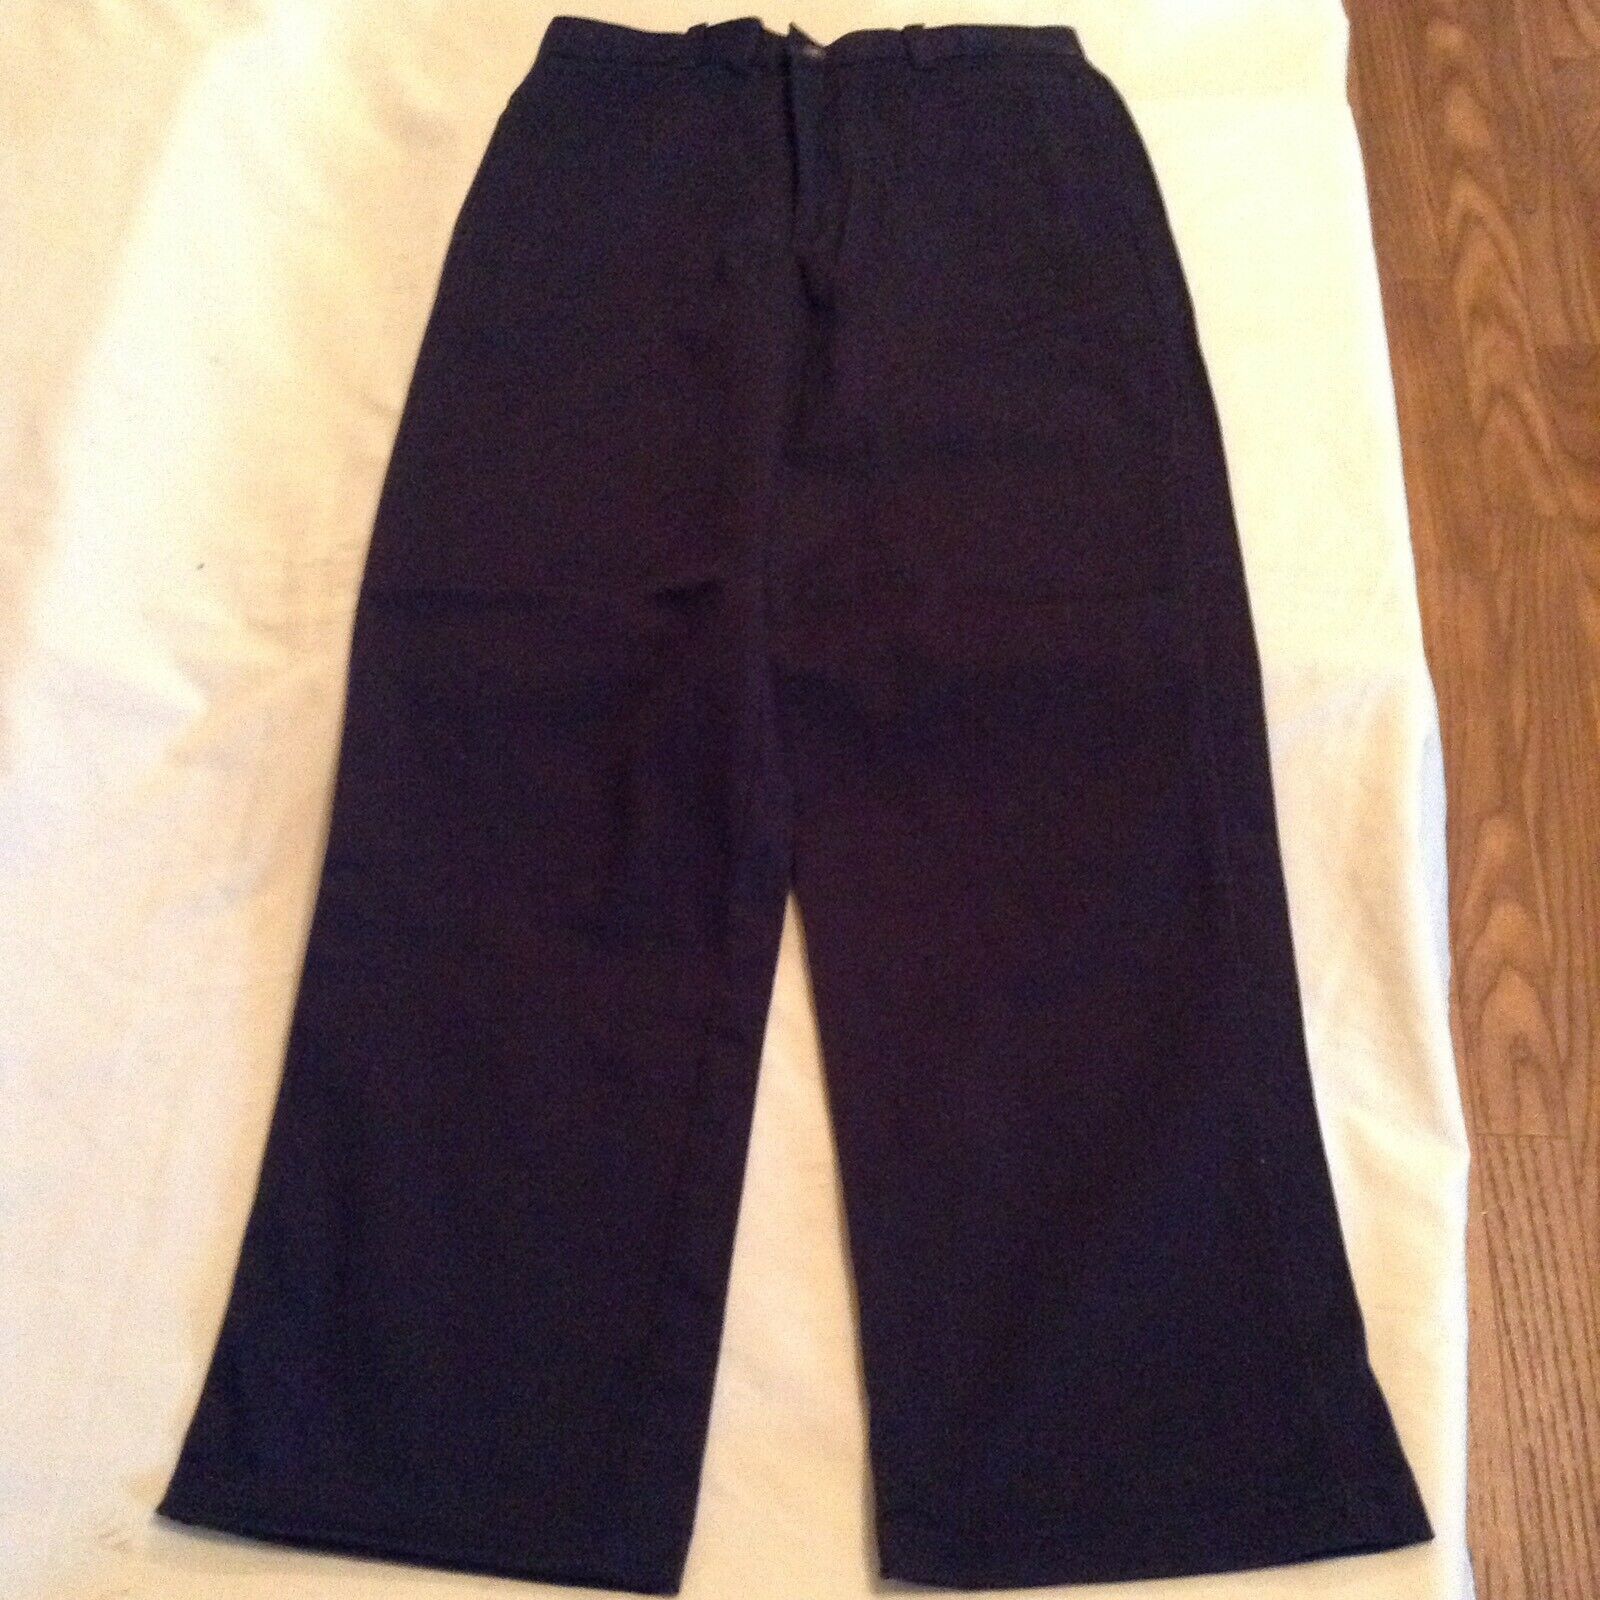  Size 14 Reg George uniform pants dark navy flat front boys   - $17.59